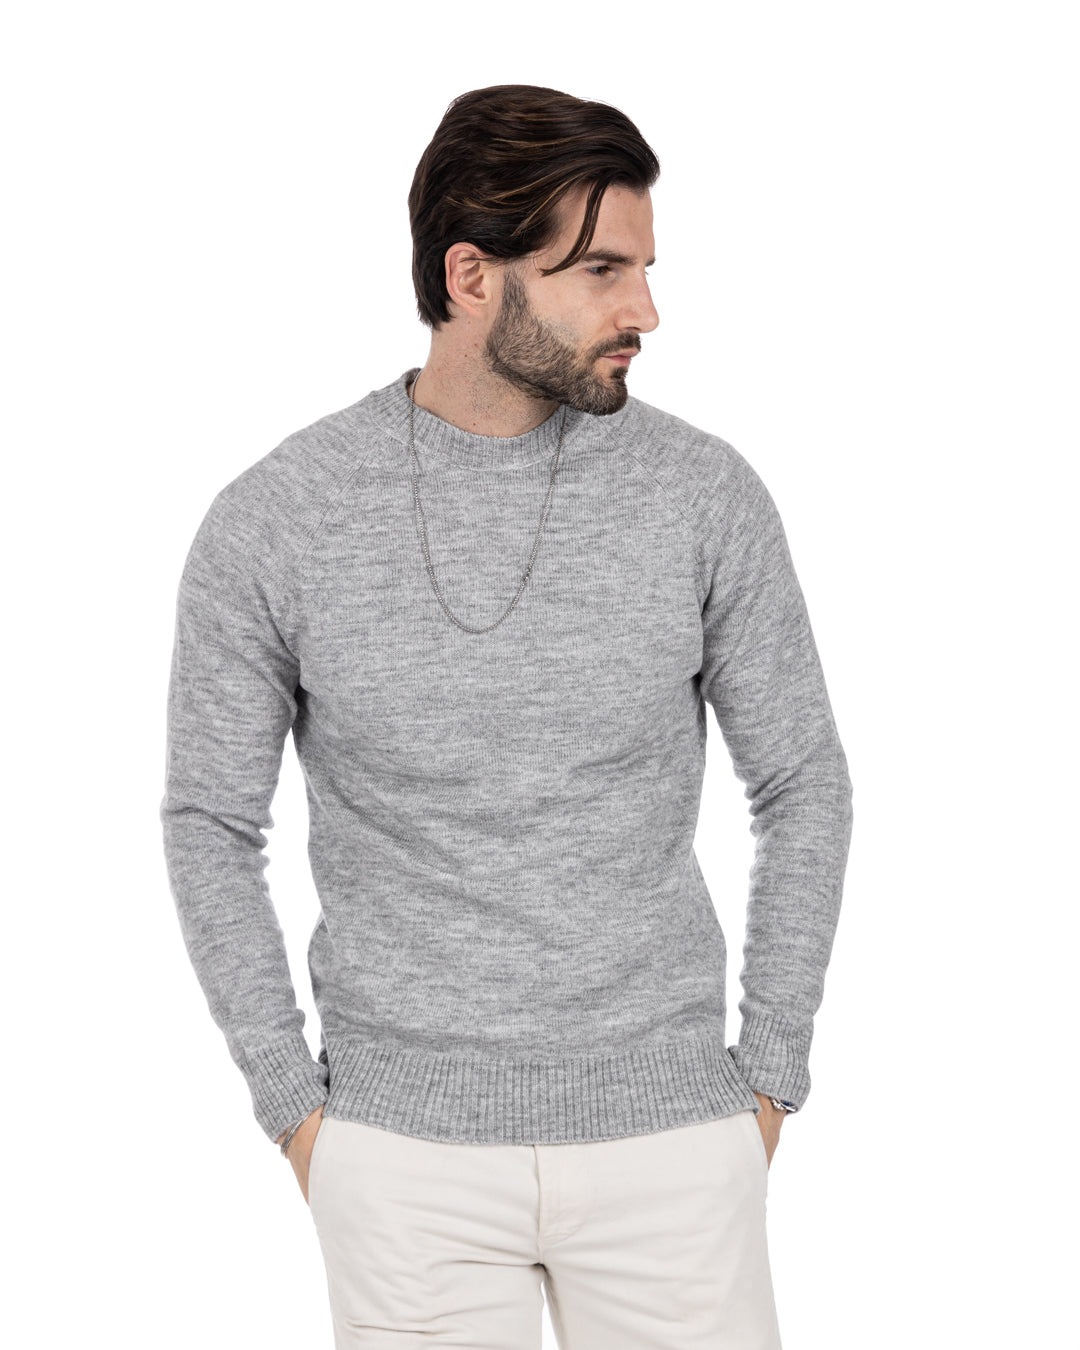 Nijmegen - gray stockinette sweater